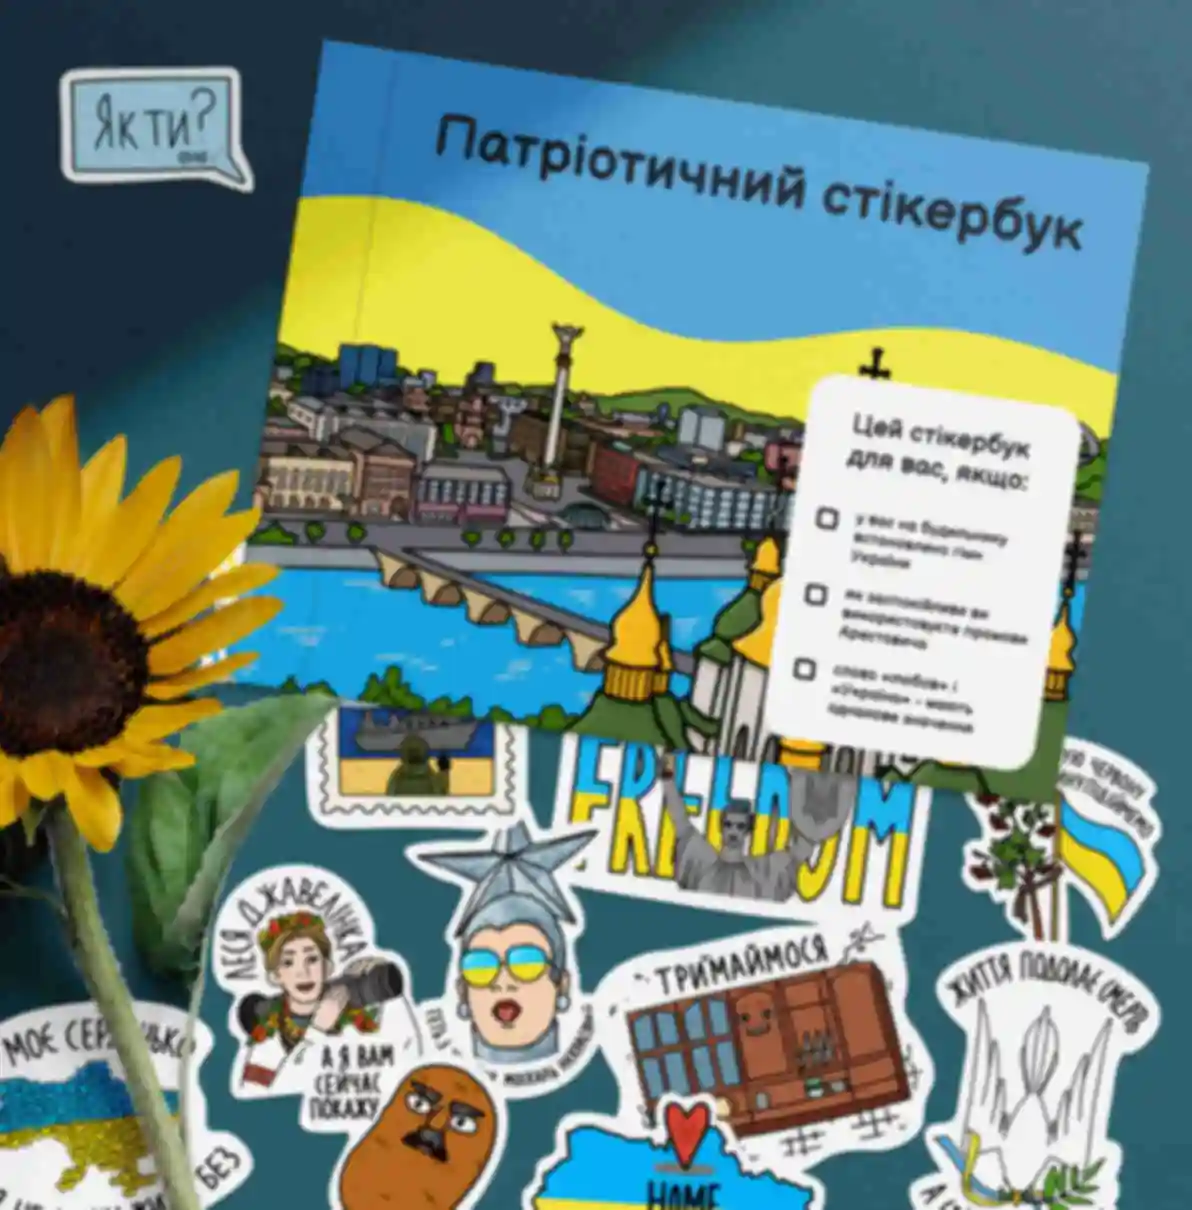 Патриотический стикербук ⦁ Наклейки с украинской символикой и мемами ⦁ Ukraine. Фото №104